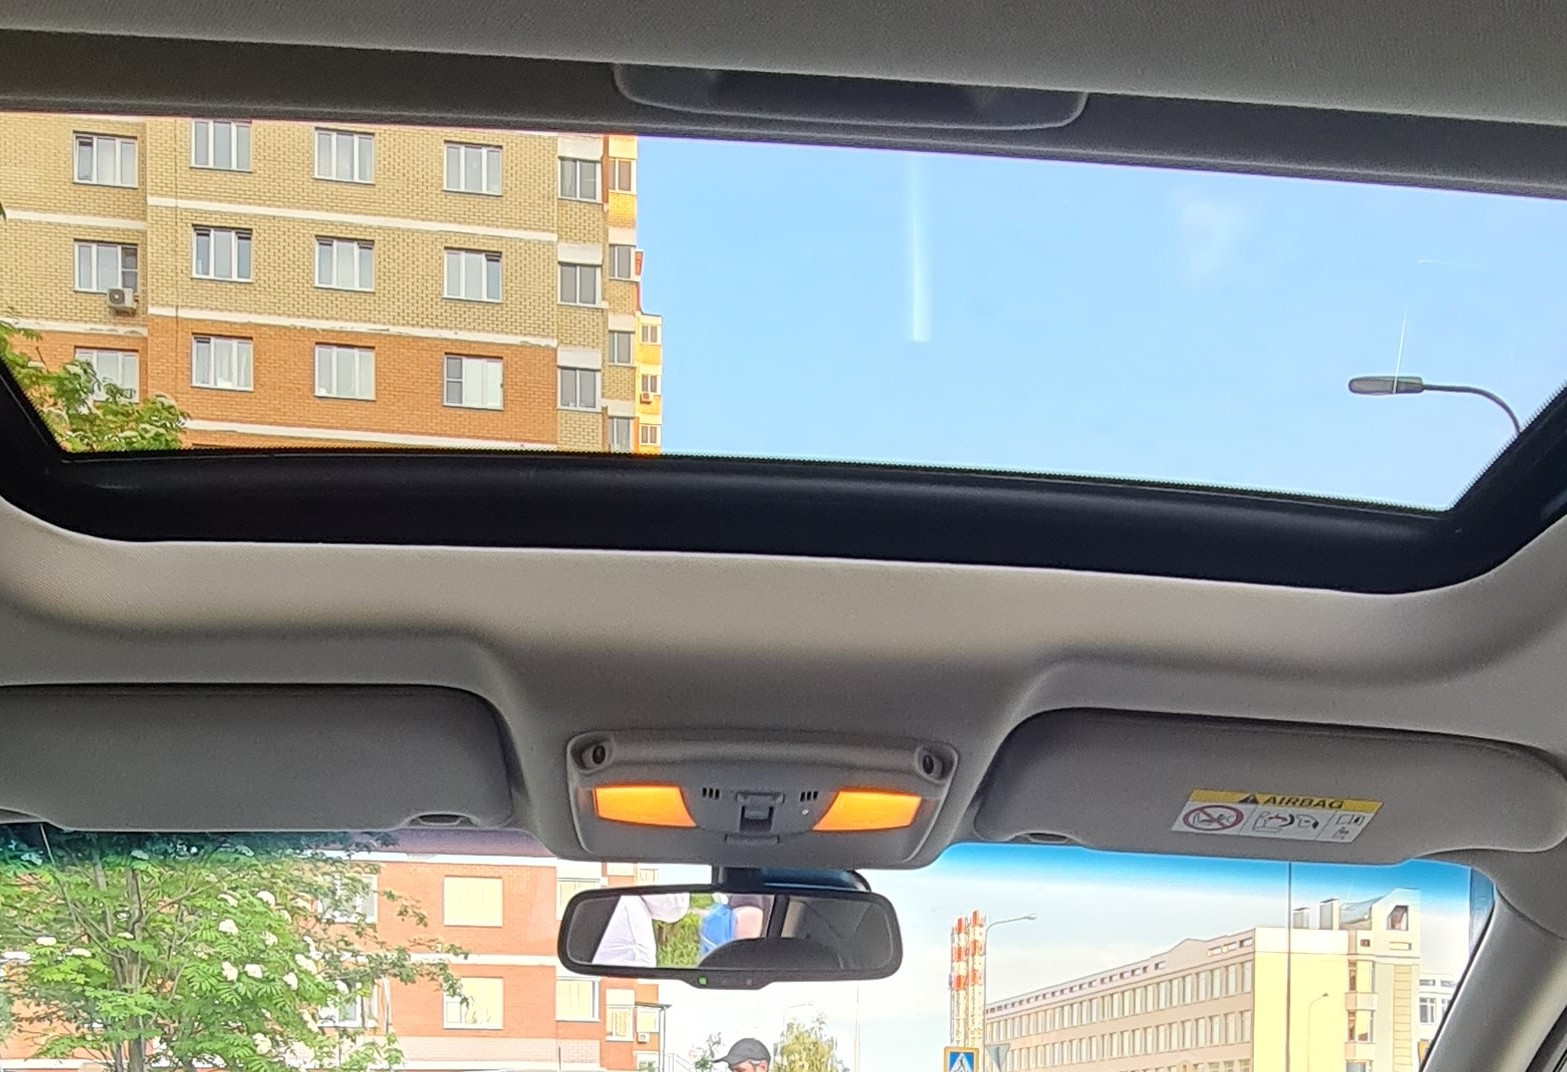 Аренда nissan teana эконом класса 2014 года в городе Москва от 2699 руб./сутки, передний привод, двигатель: бензин, объем 2.5 литров, ОСАГО (Мультидрайв), без водителя, недорого, вид 10 - RentRide